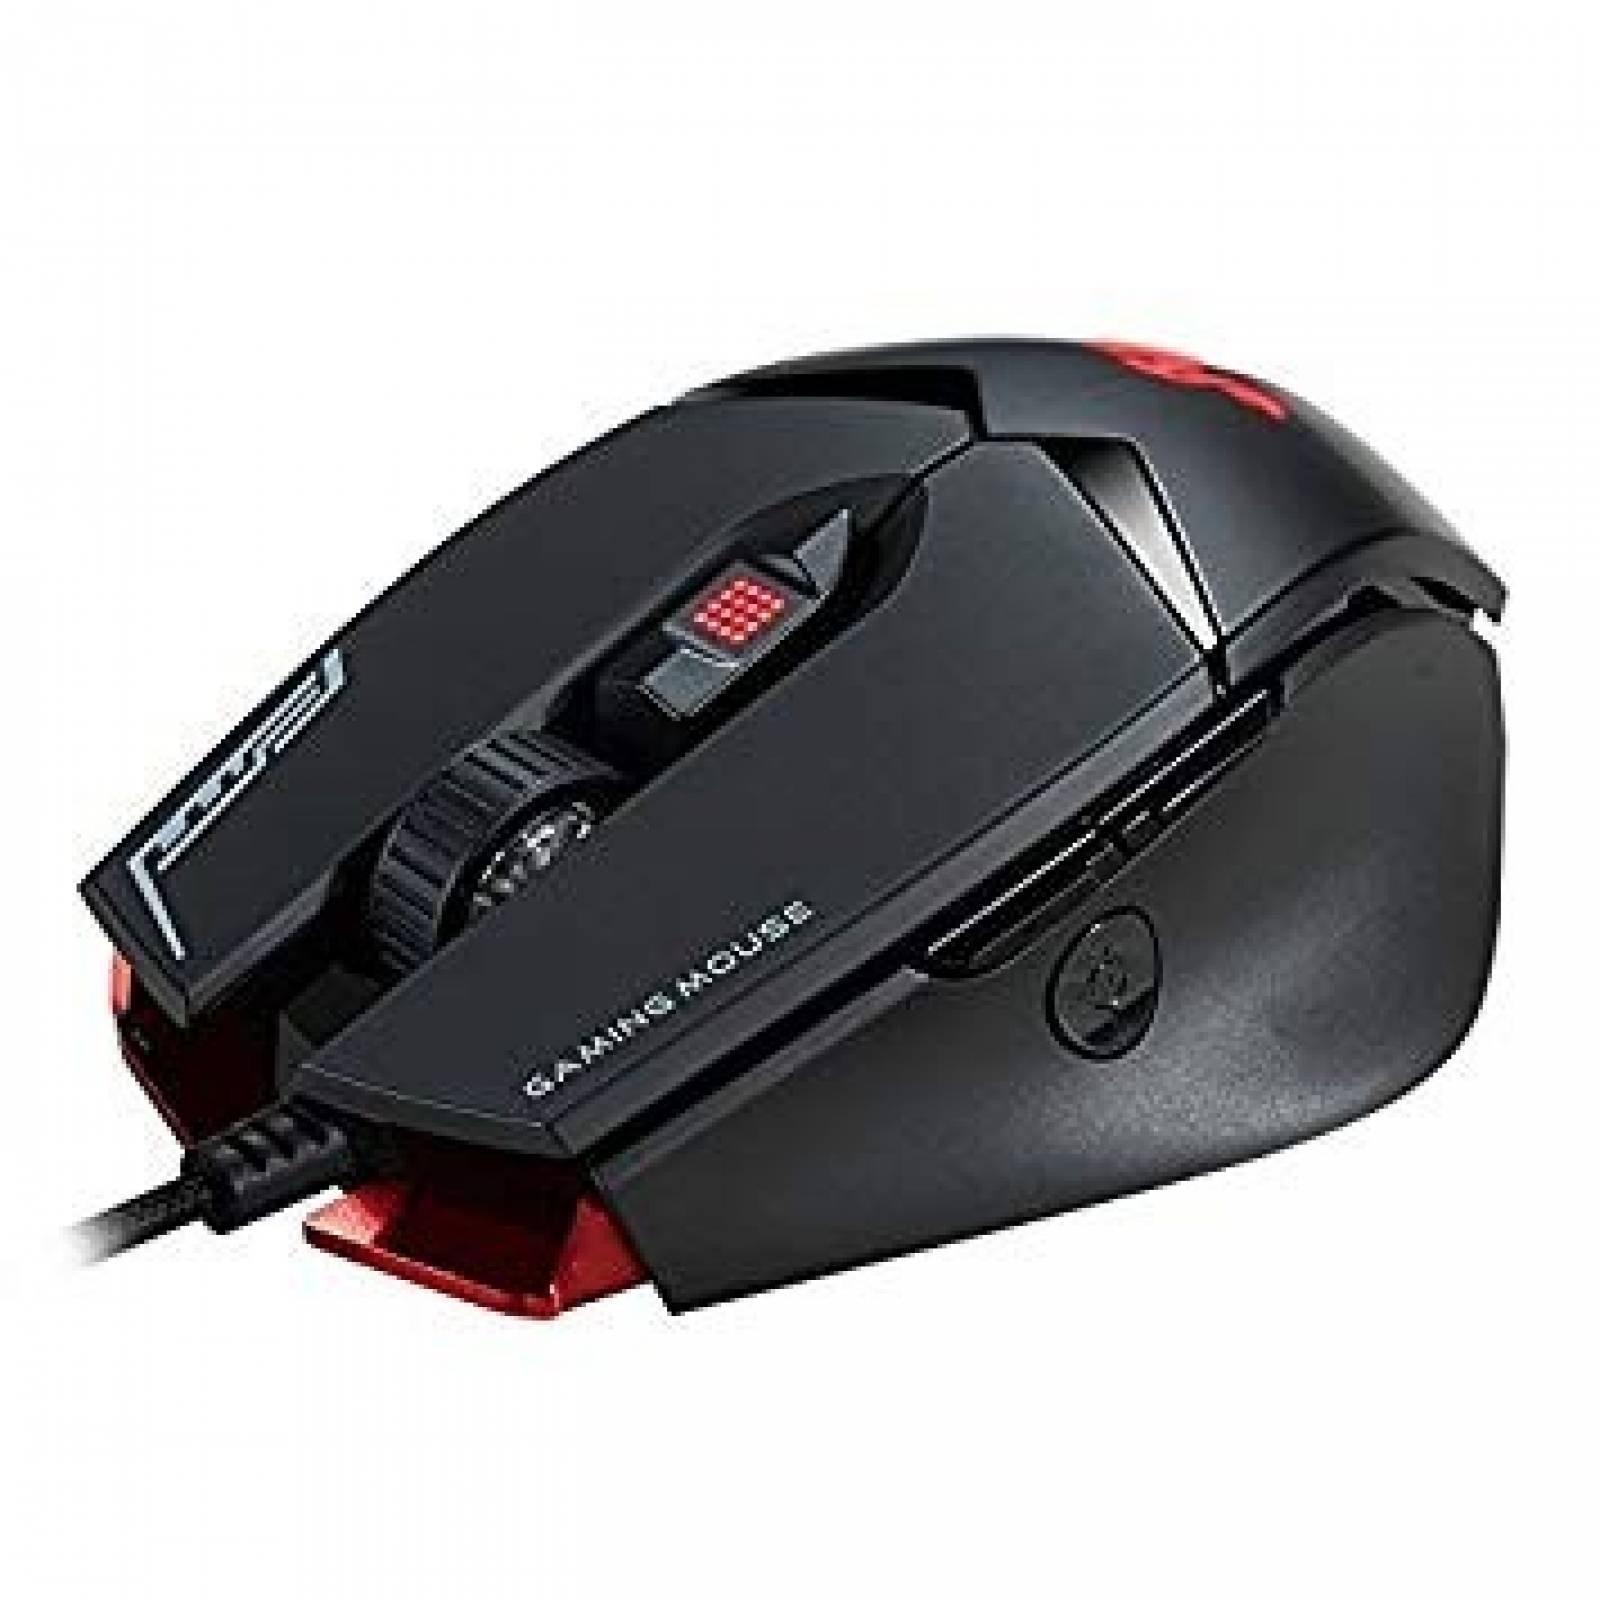 Mouse Gamer Rii M01 12000 DPI 7 Botones -Negro